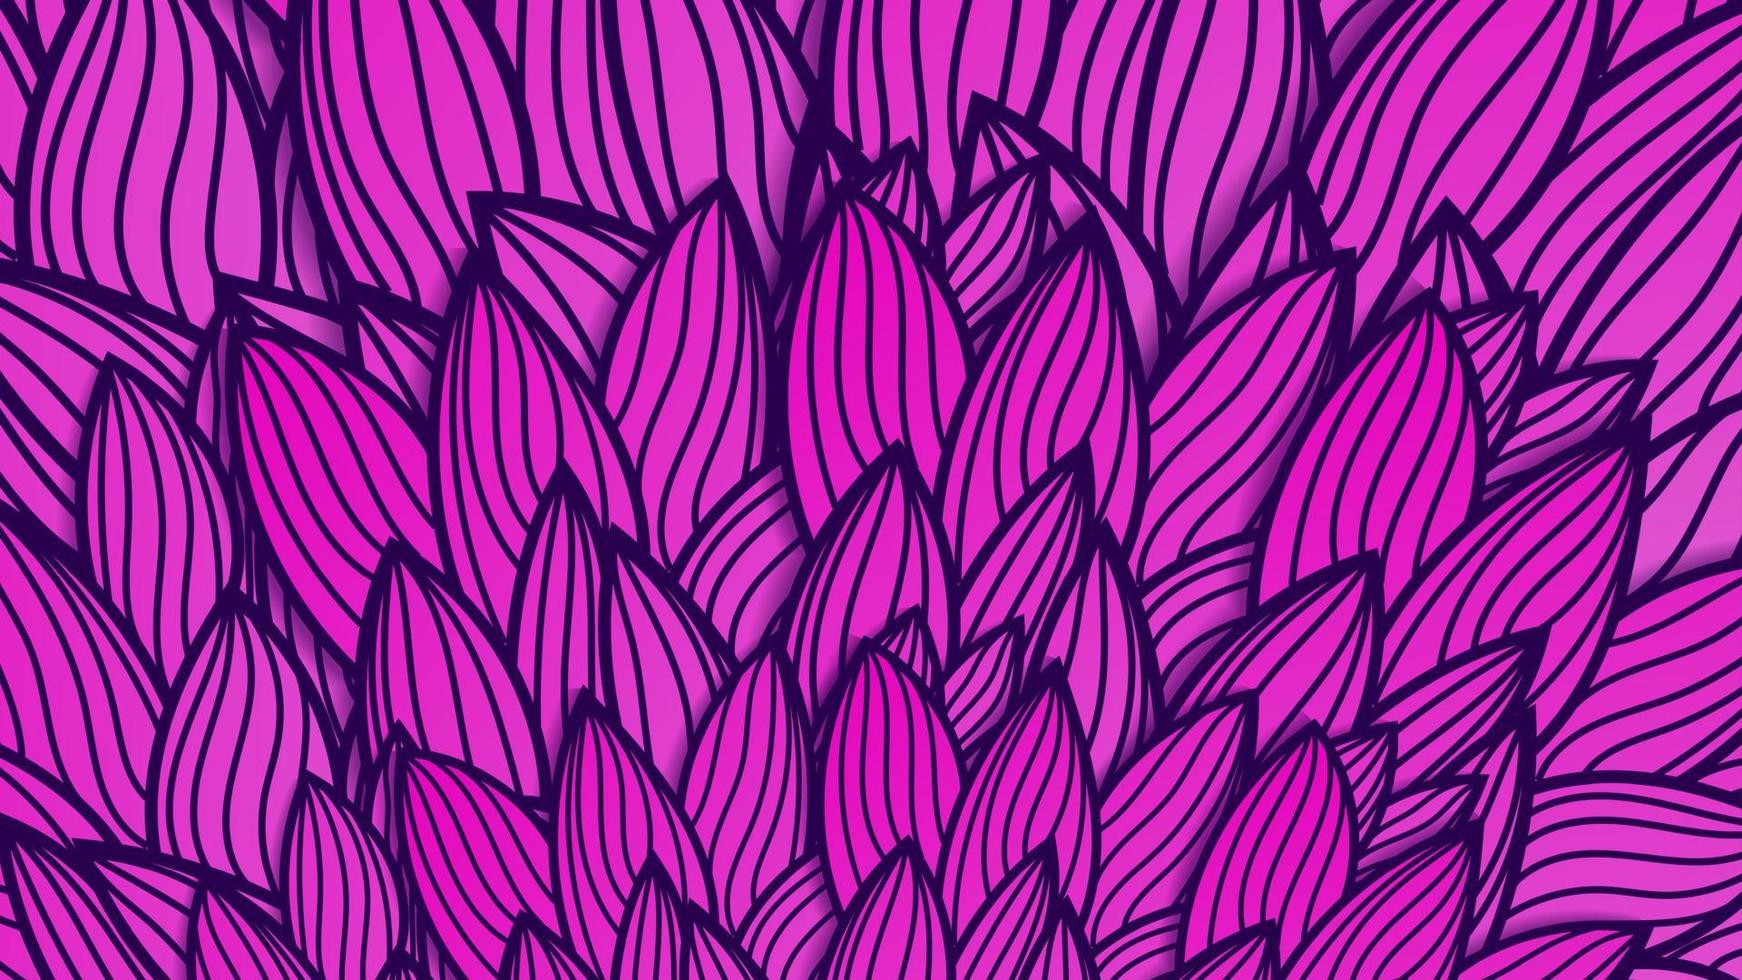 vetor padrão sem emenda gradiente roxo geométrico com fundo floral de listras que se cruzam. vector textura perfeita de violeta lunar e rosa com flores abstratas fundo com gráfico desenhado à mão